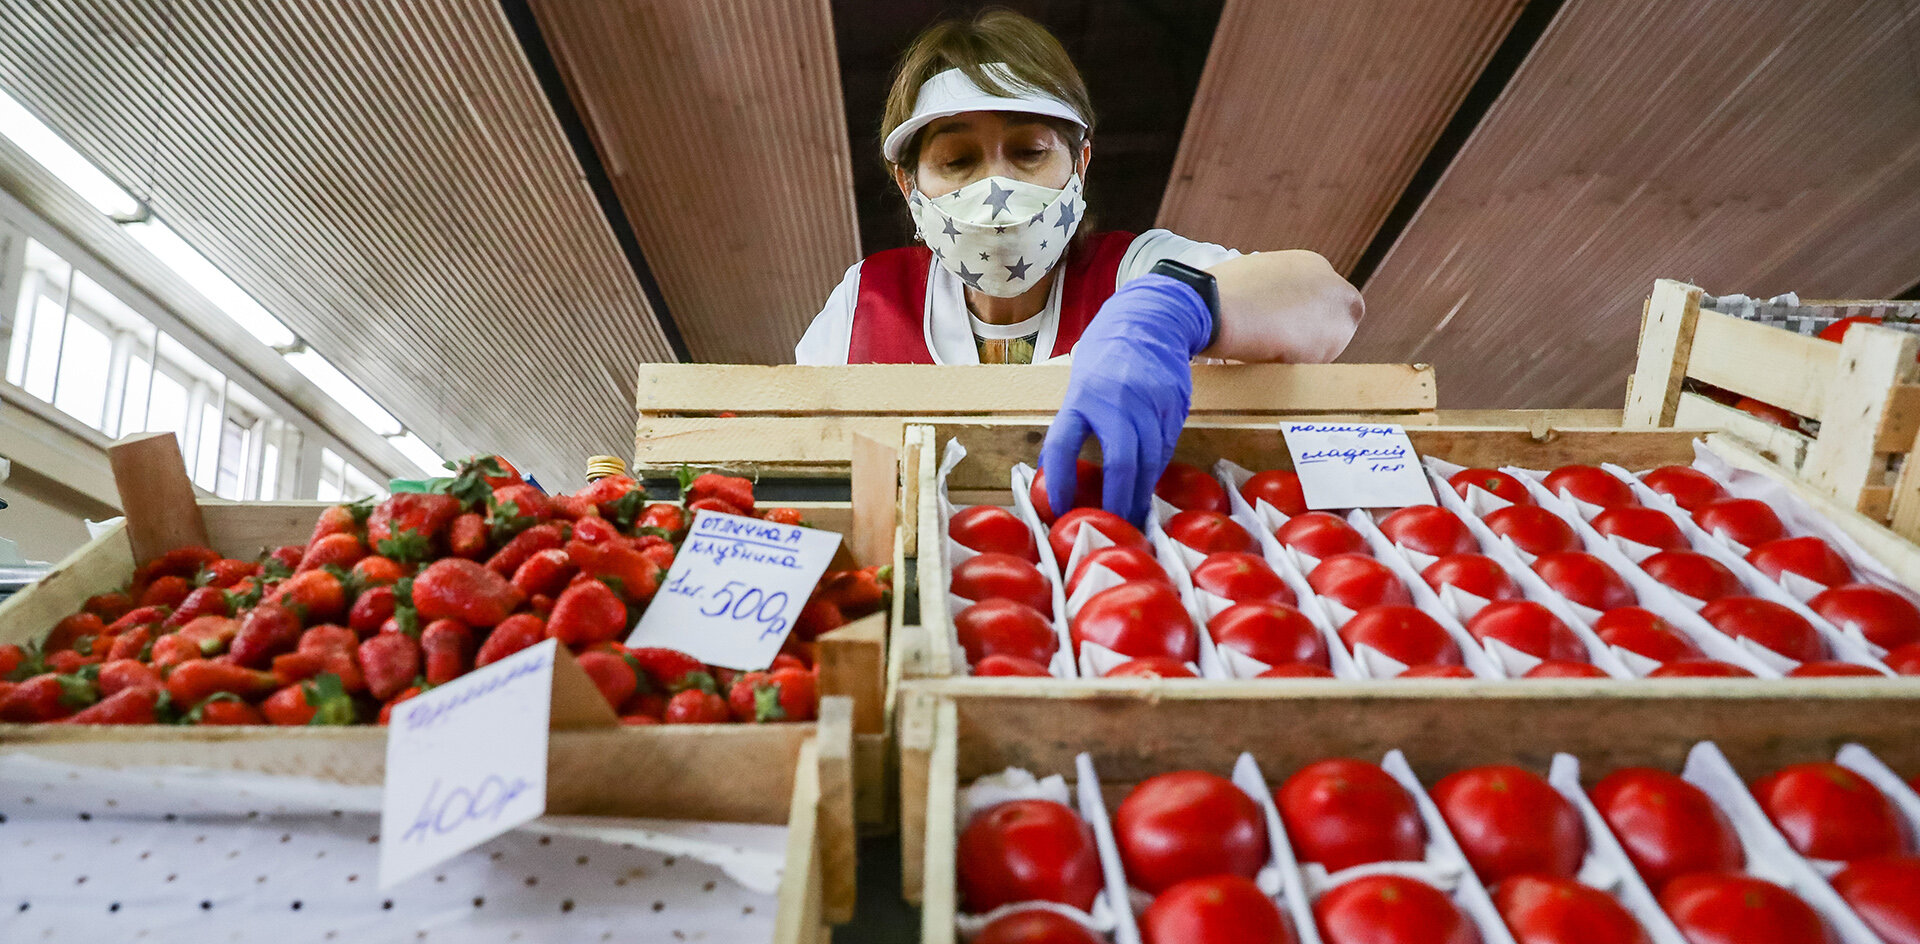 Херсонские овощи и фрукты создадут конкуренцию в Крыму